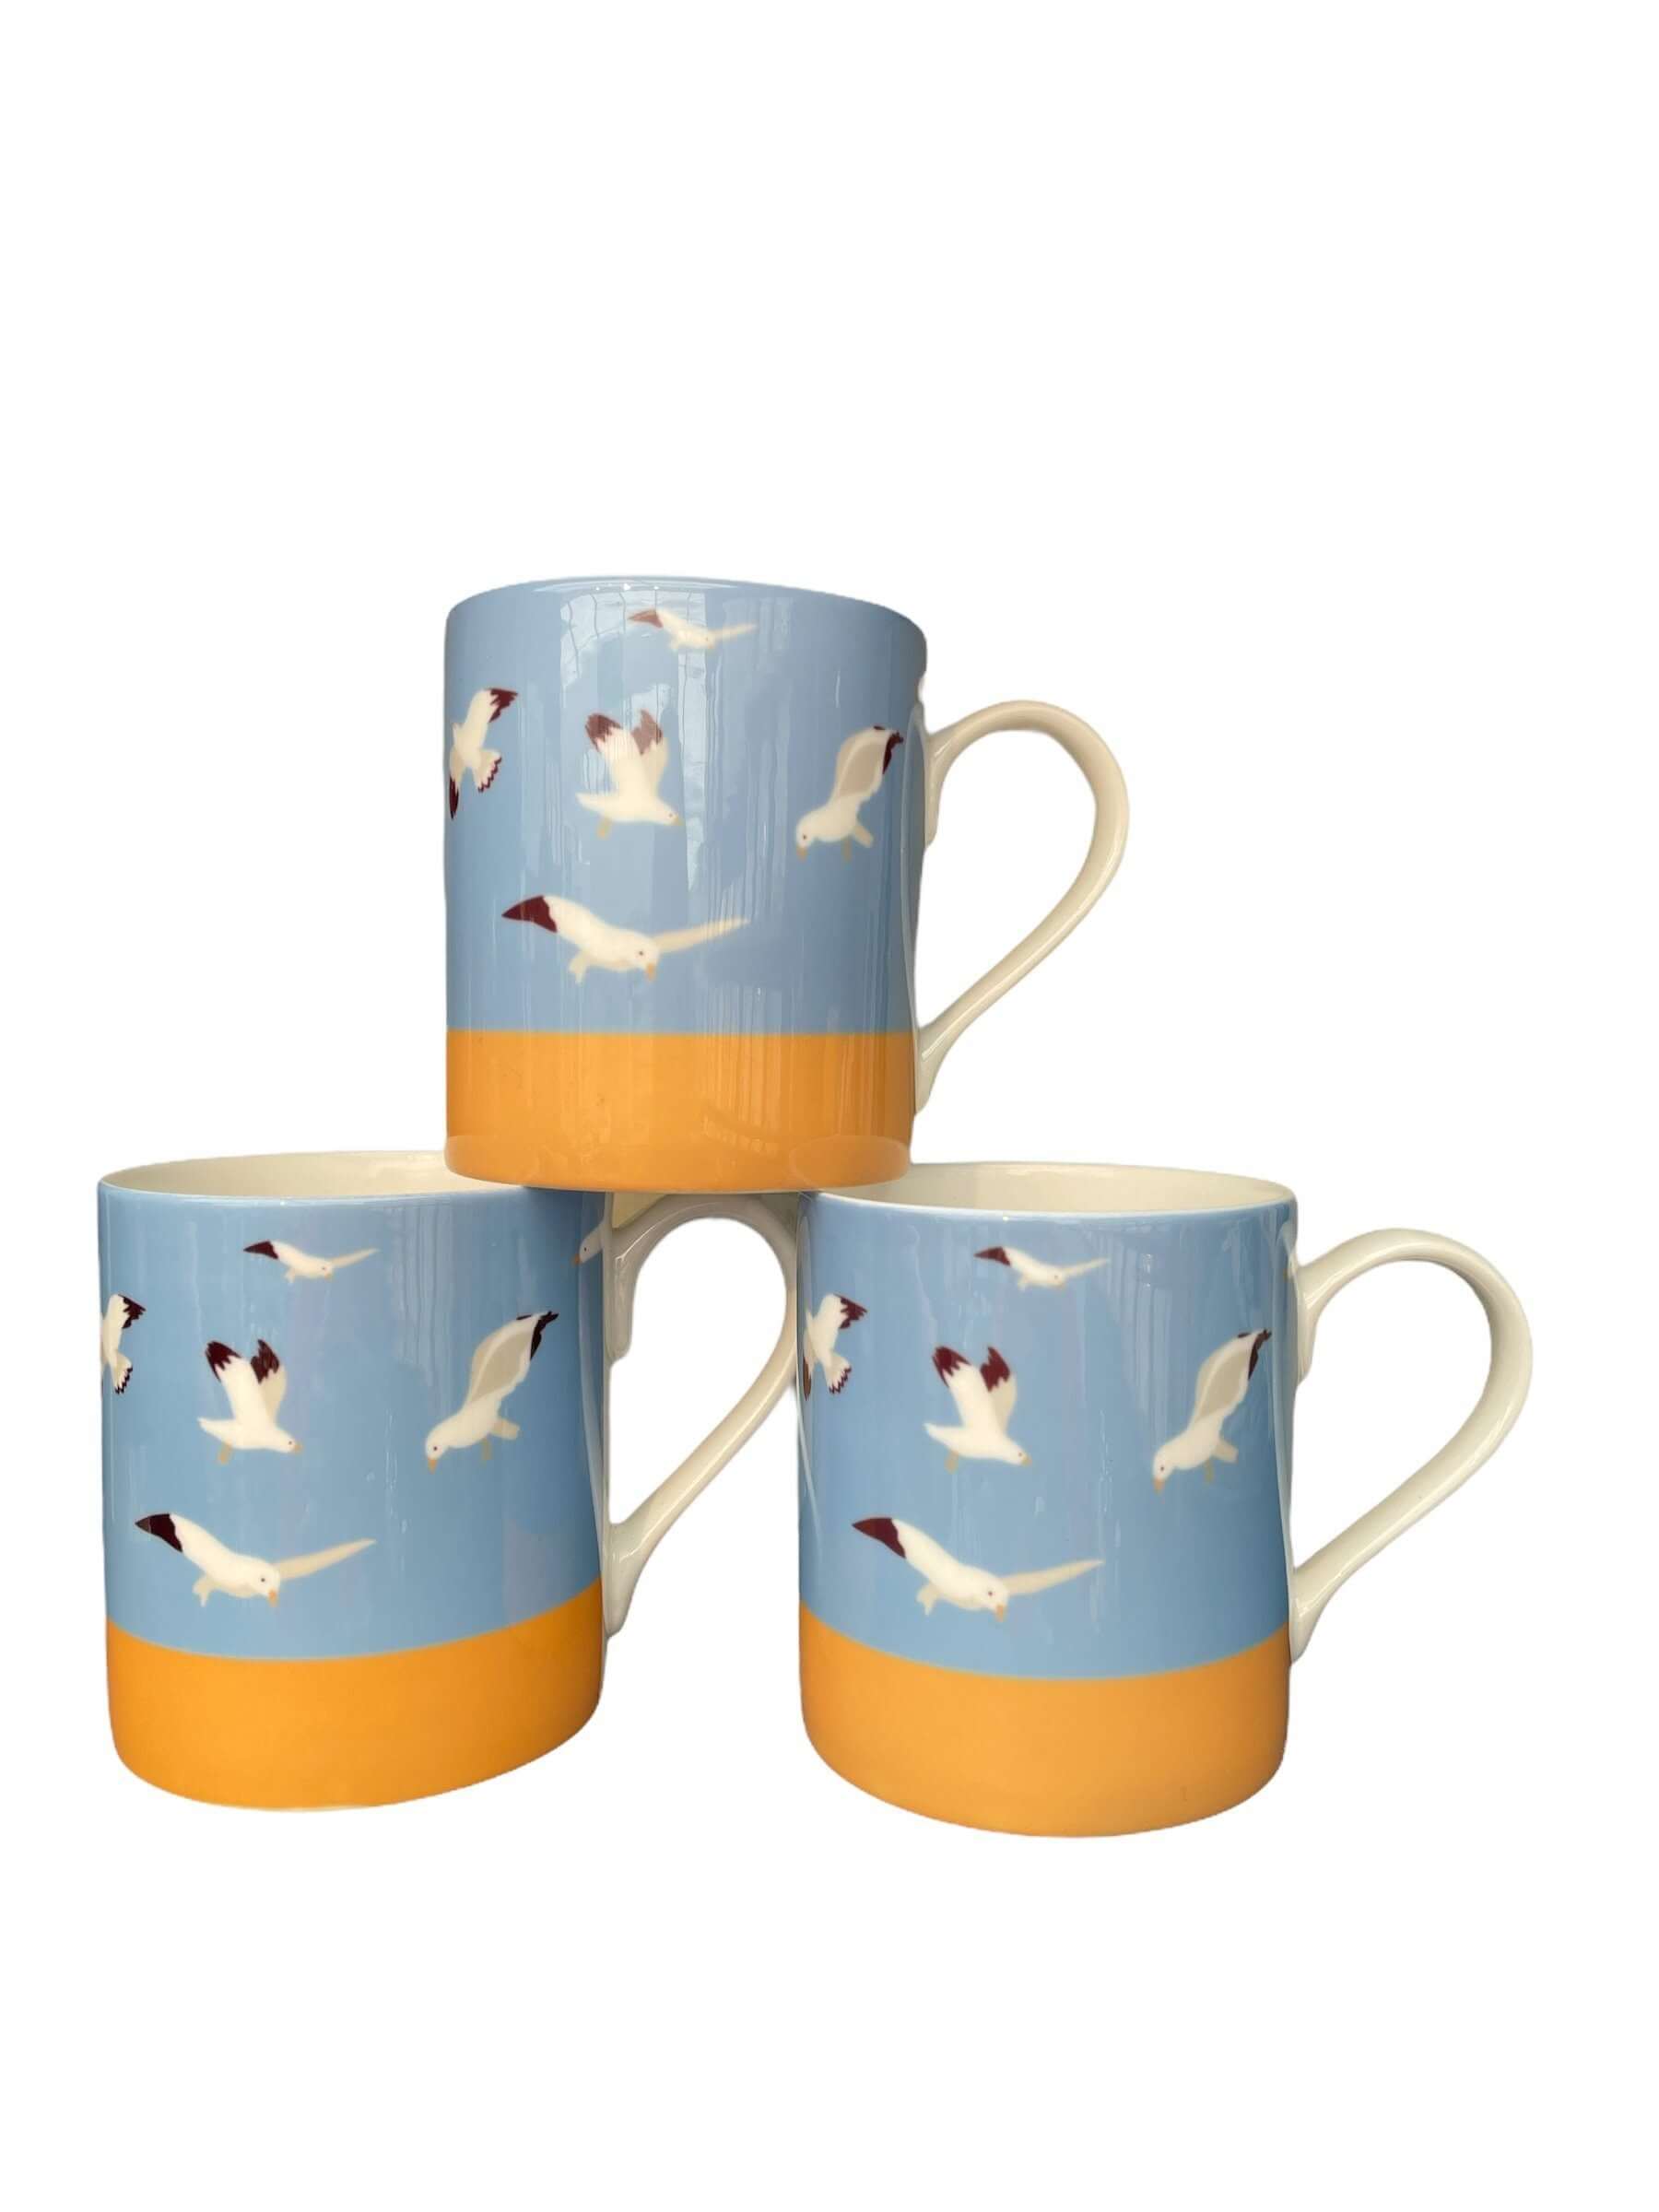 Oh Gully Small Mug Set Mug Set Mustard and Gray Ltd Shropshire UK